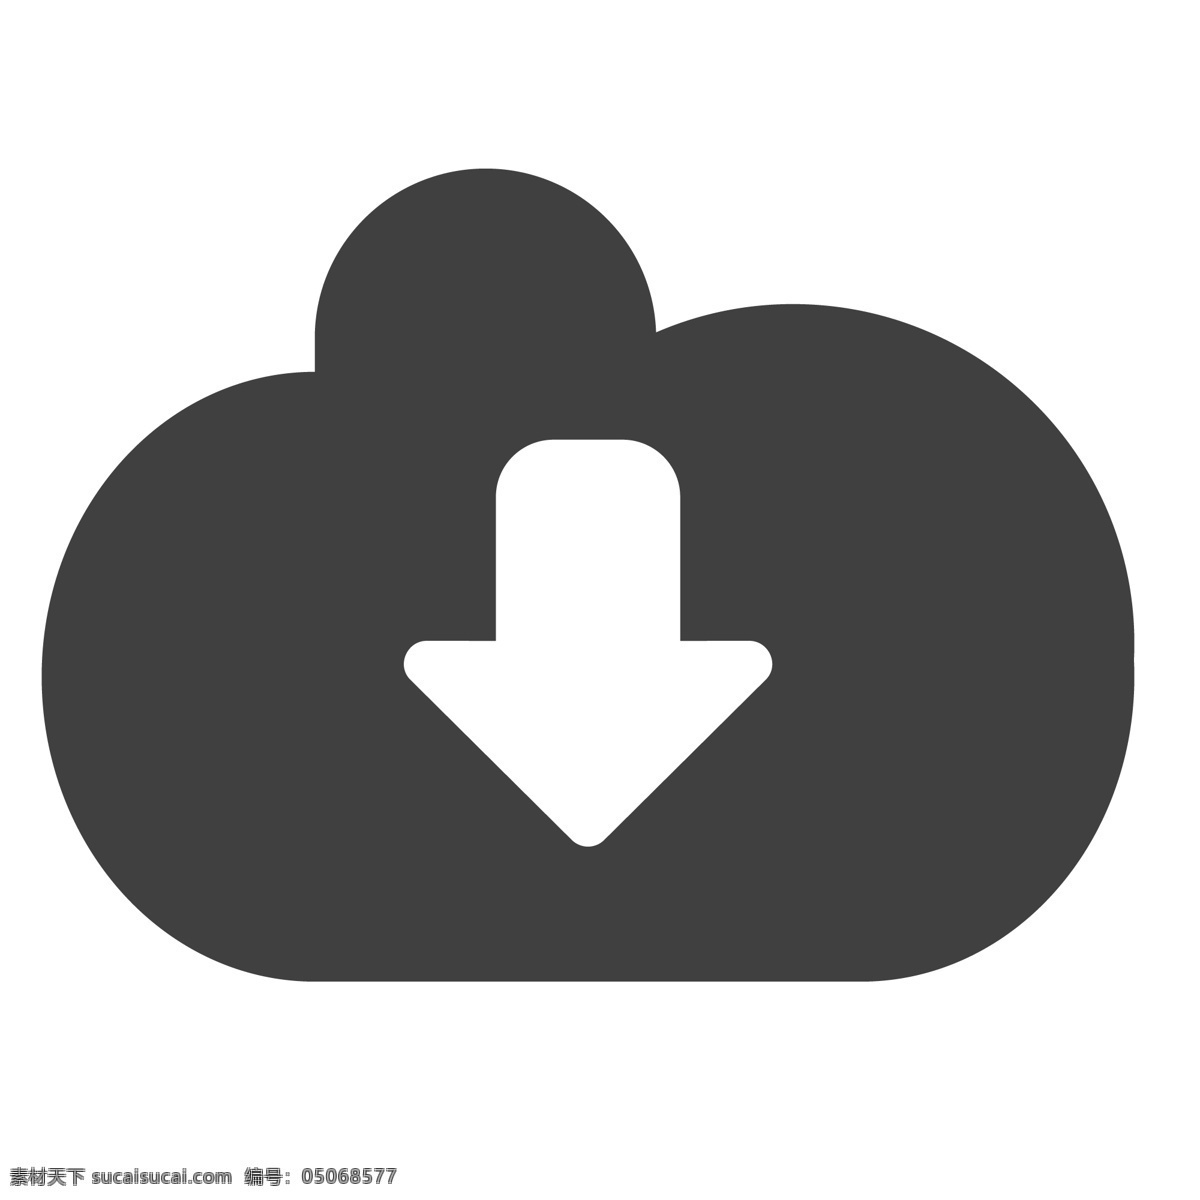 云下载图标 箭头 云下载 卡通 生活图标 卡通图标 黑色的图标 手机图标 智能图标设计